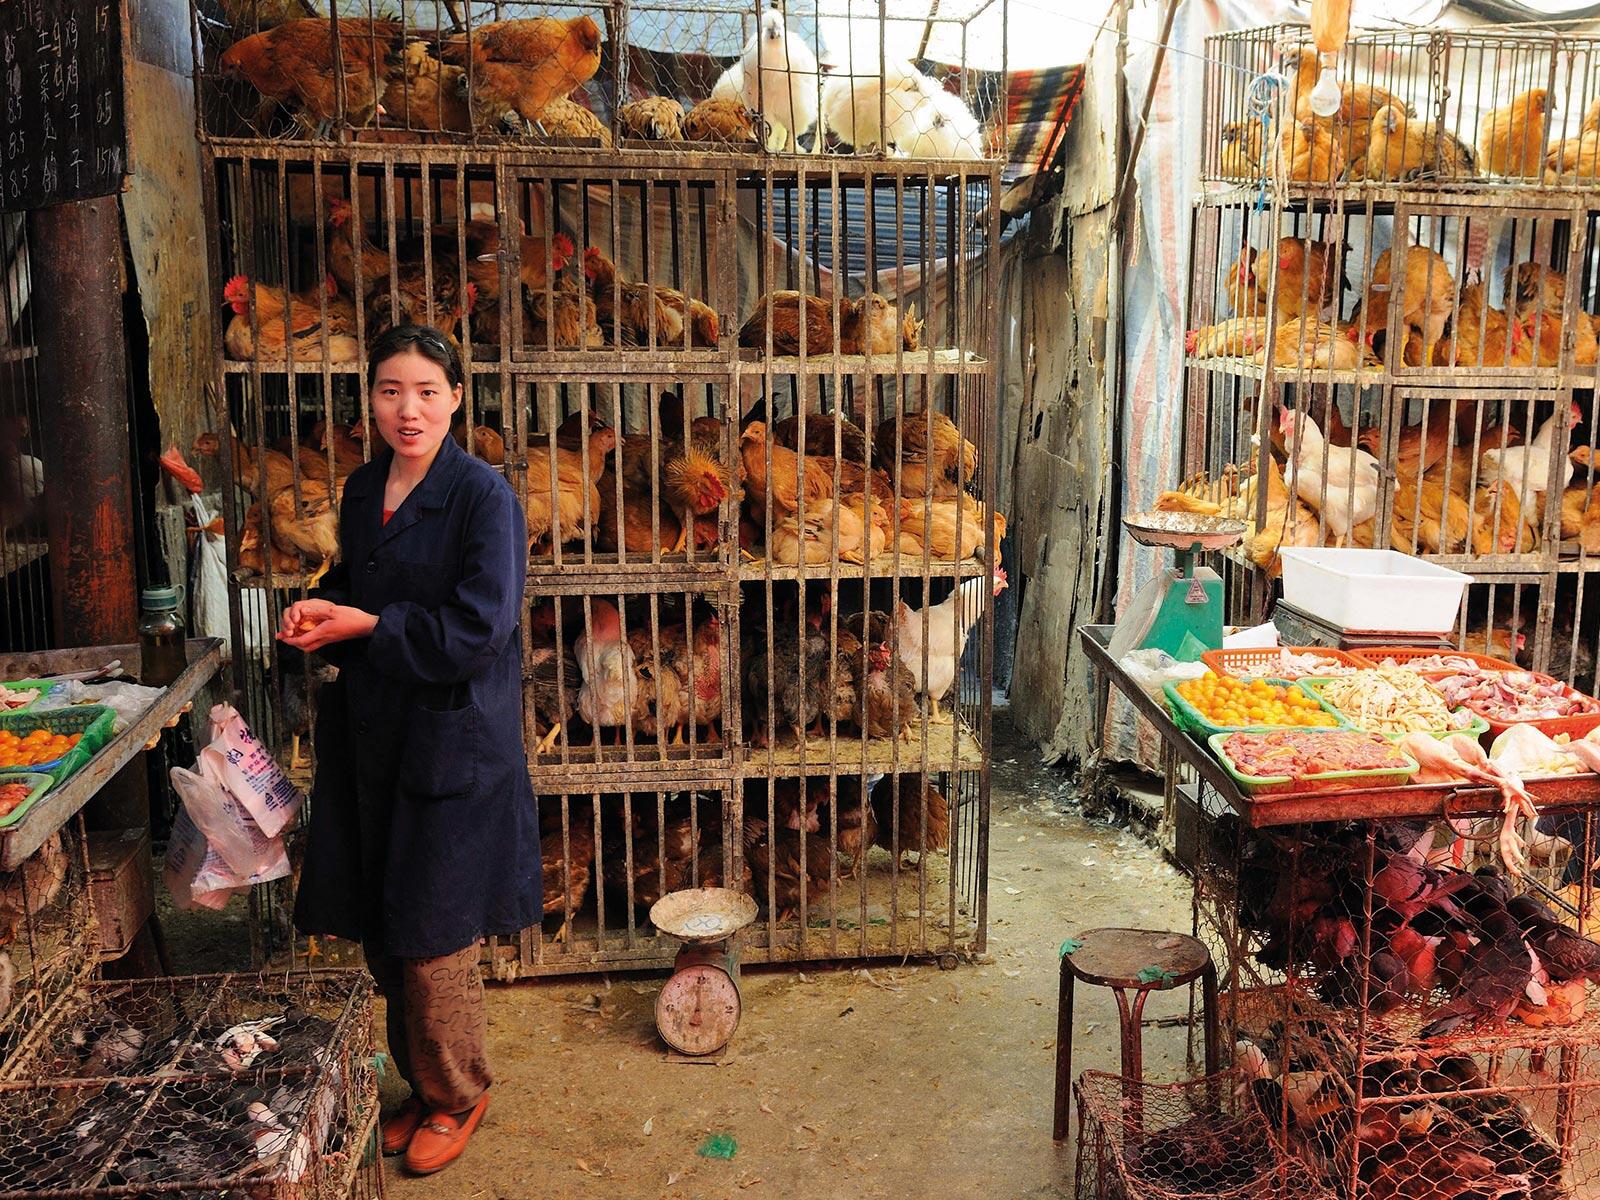 鳥インフルエンザ封じ込めに向けての障害は、生きた鳥を販売するアジアでの市場の衛生状態の改善の難しさだ（中国青海省西寧市のニワトリ市場にて撮影）